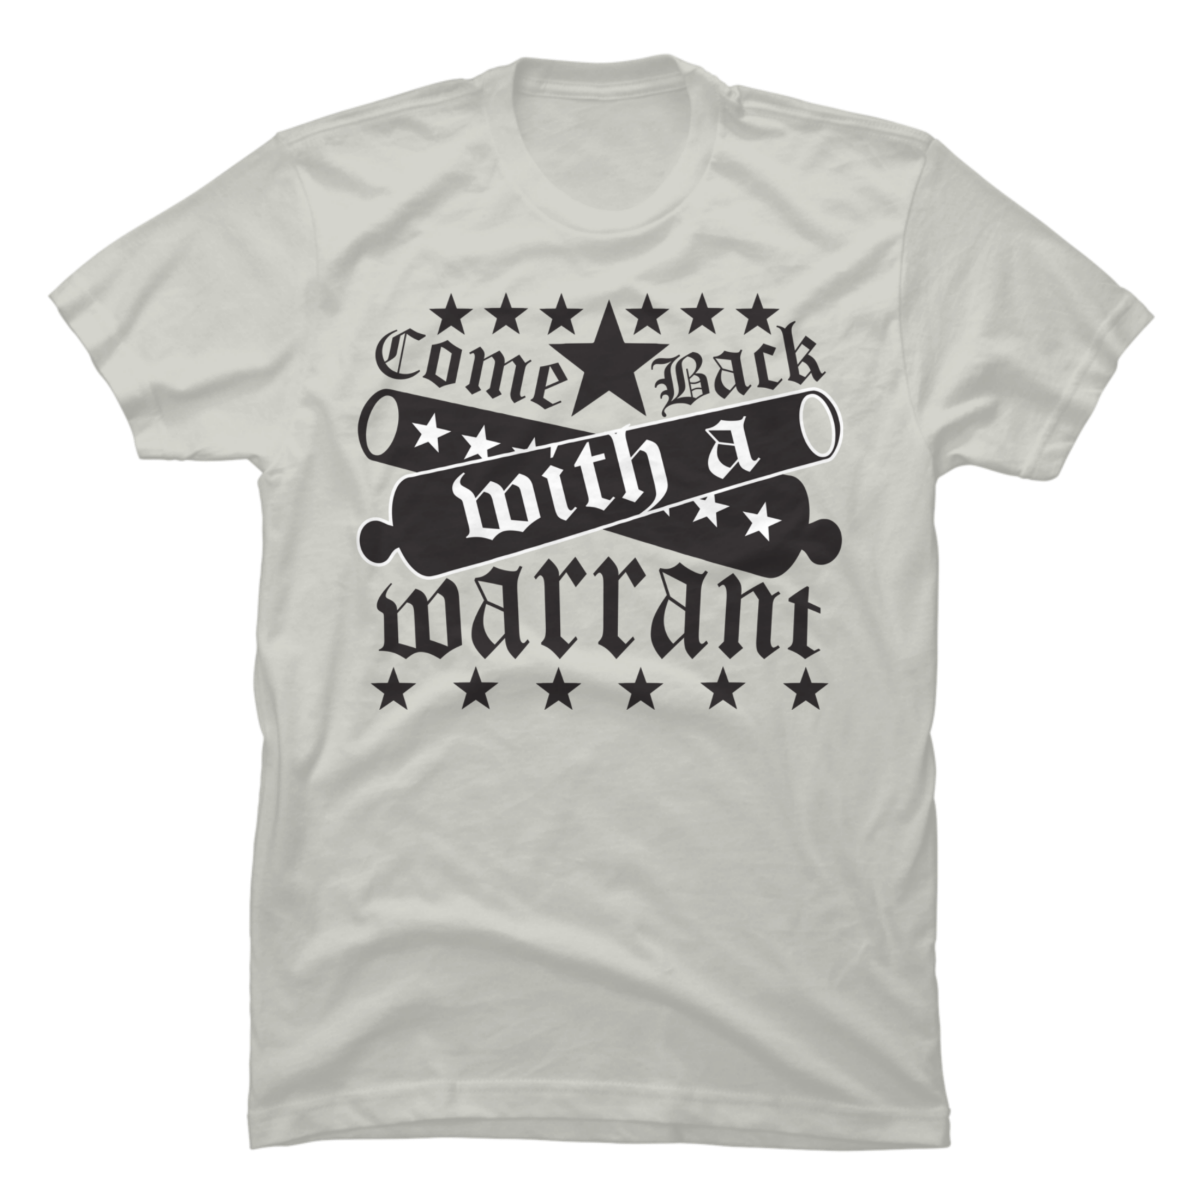 warrant t shirts